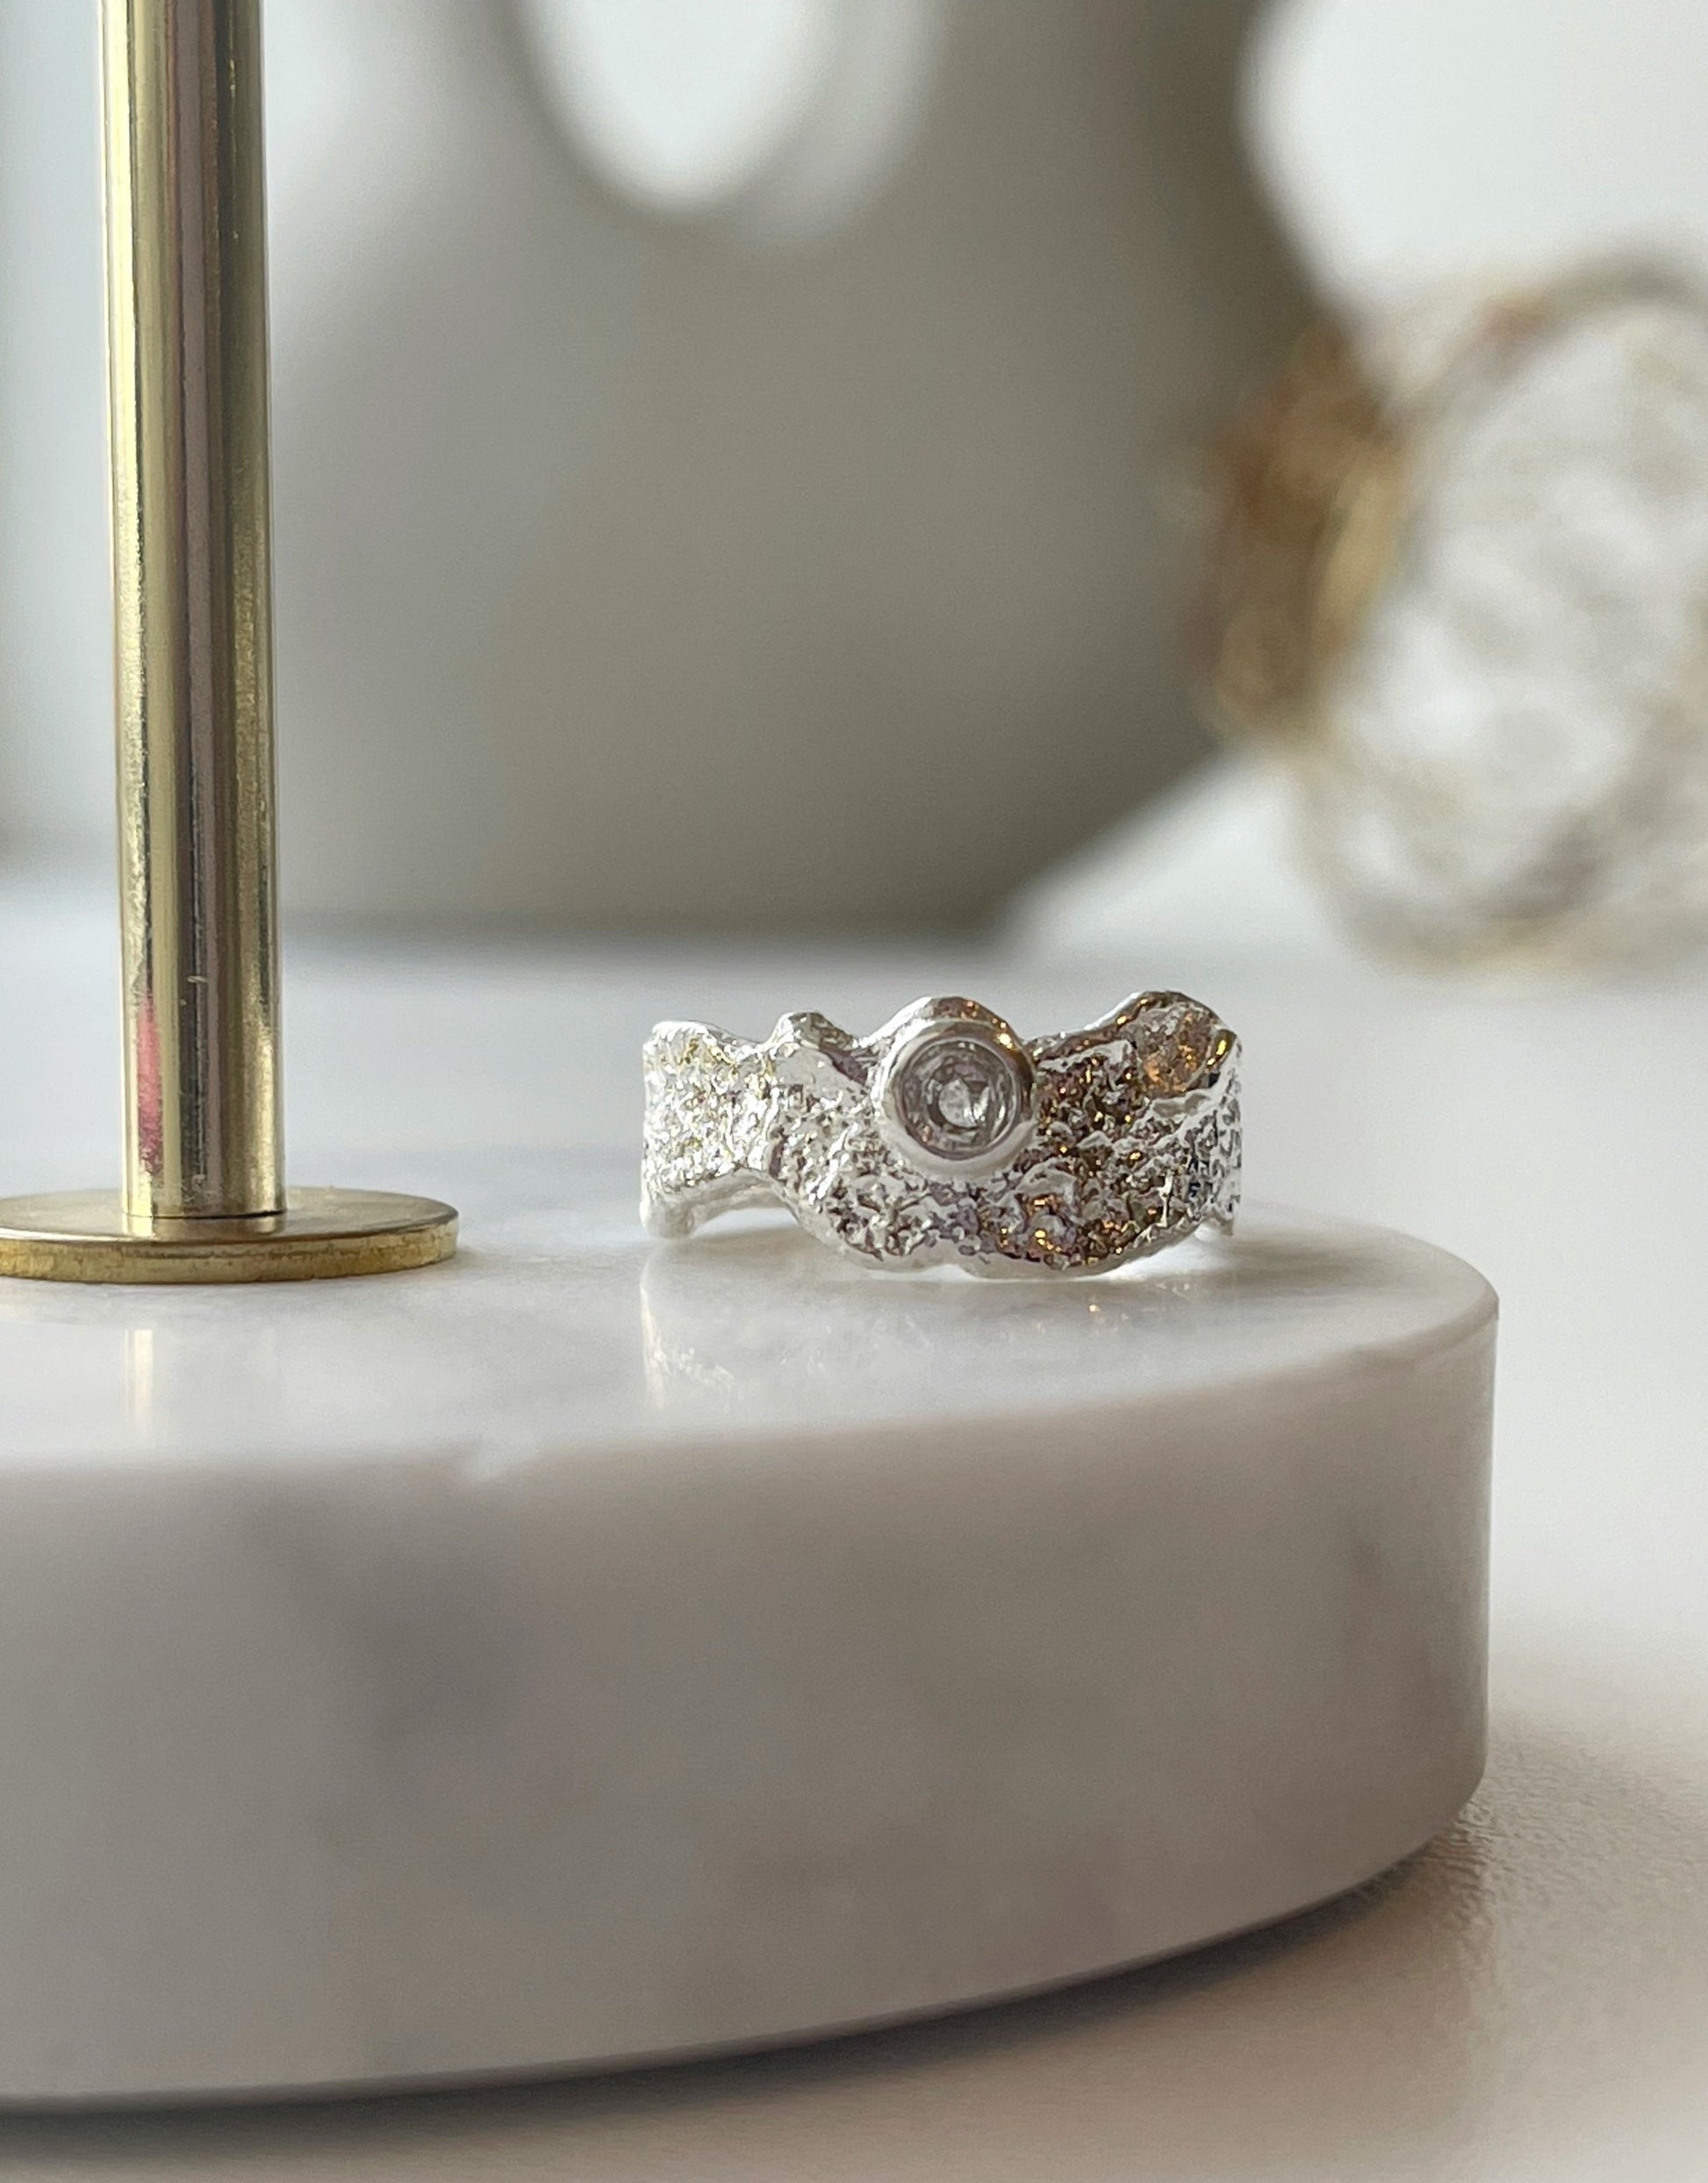 Lilje ring i sølv.  Elegant ring i guld med de fineste detaljer og en lille zircon sten i. Ringen er i et mat guld look med abstrakte deltaljer.